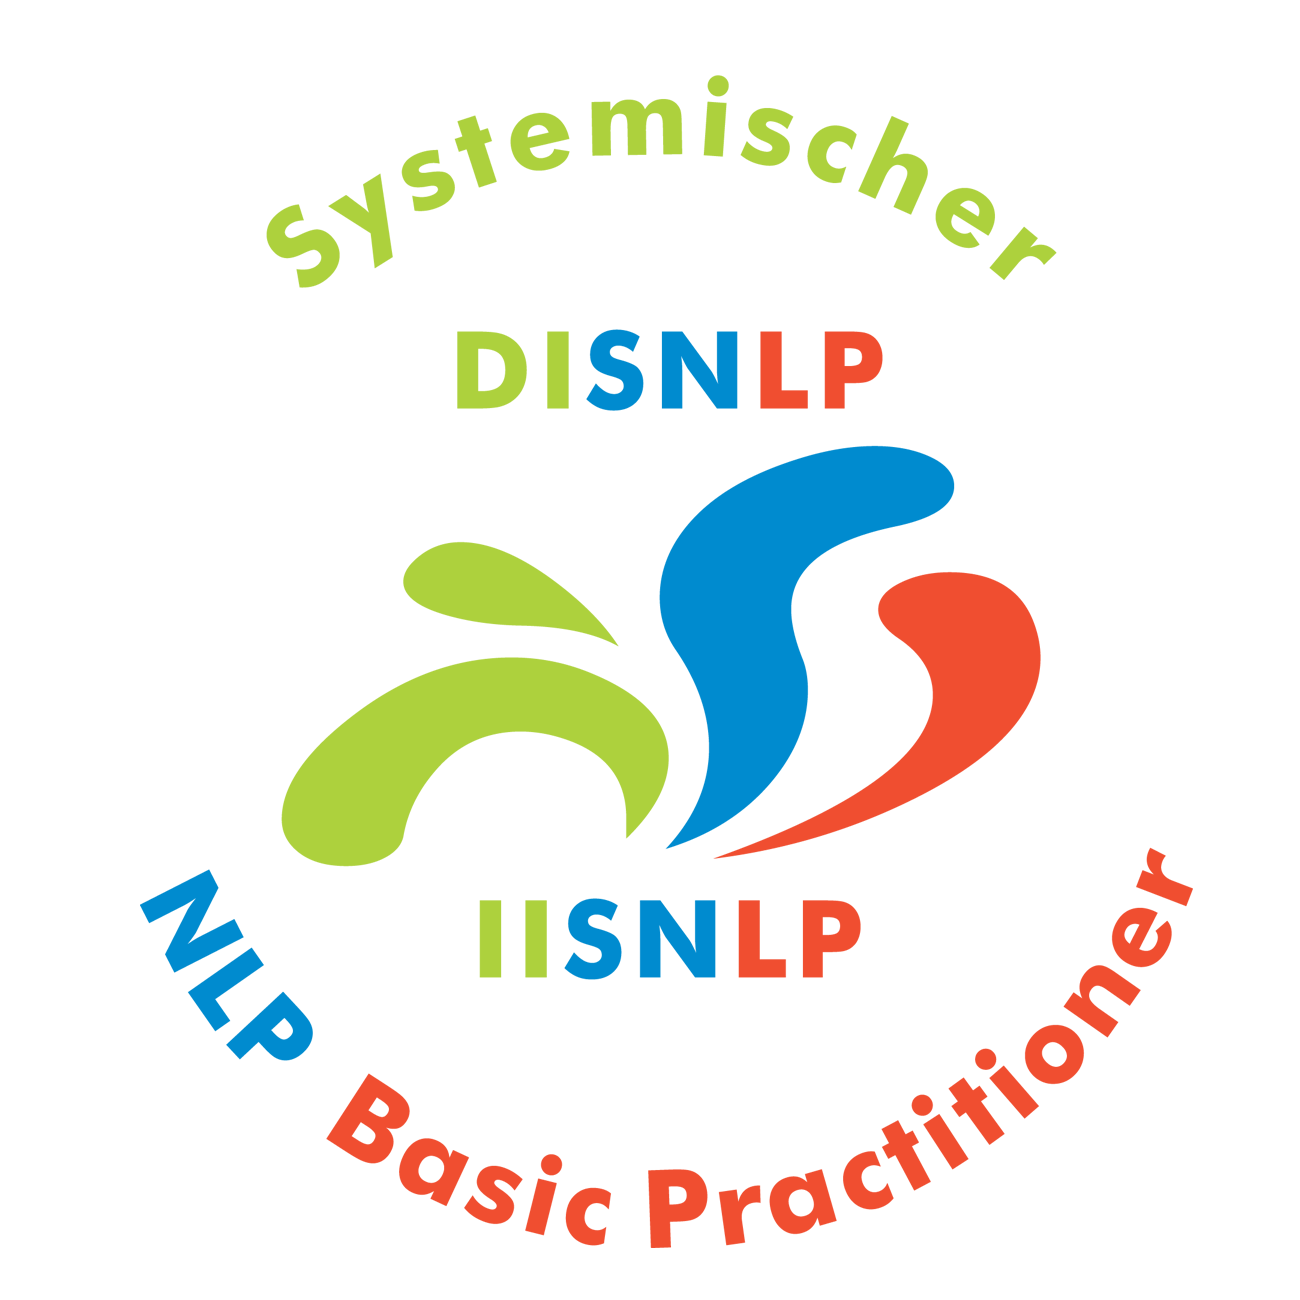 Seminar Selbstbewusstsein, Selbstvertrauen, Selbstwert, Selbstsicherheit stärken Stuttgart Neckar mit NLP Coaching Kurs für mehr Selbstbewusstsein